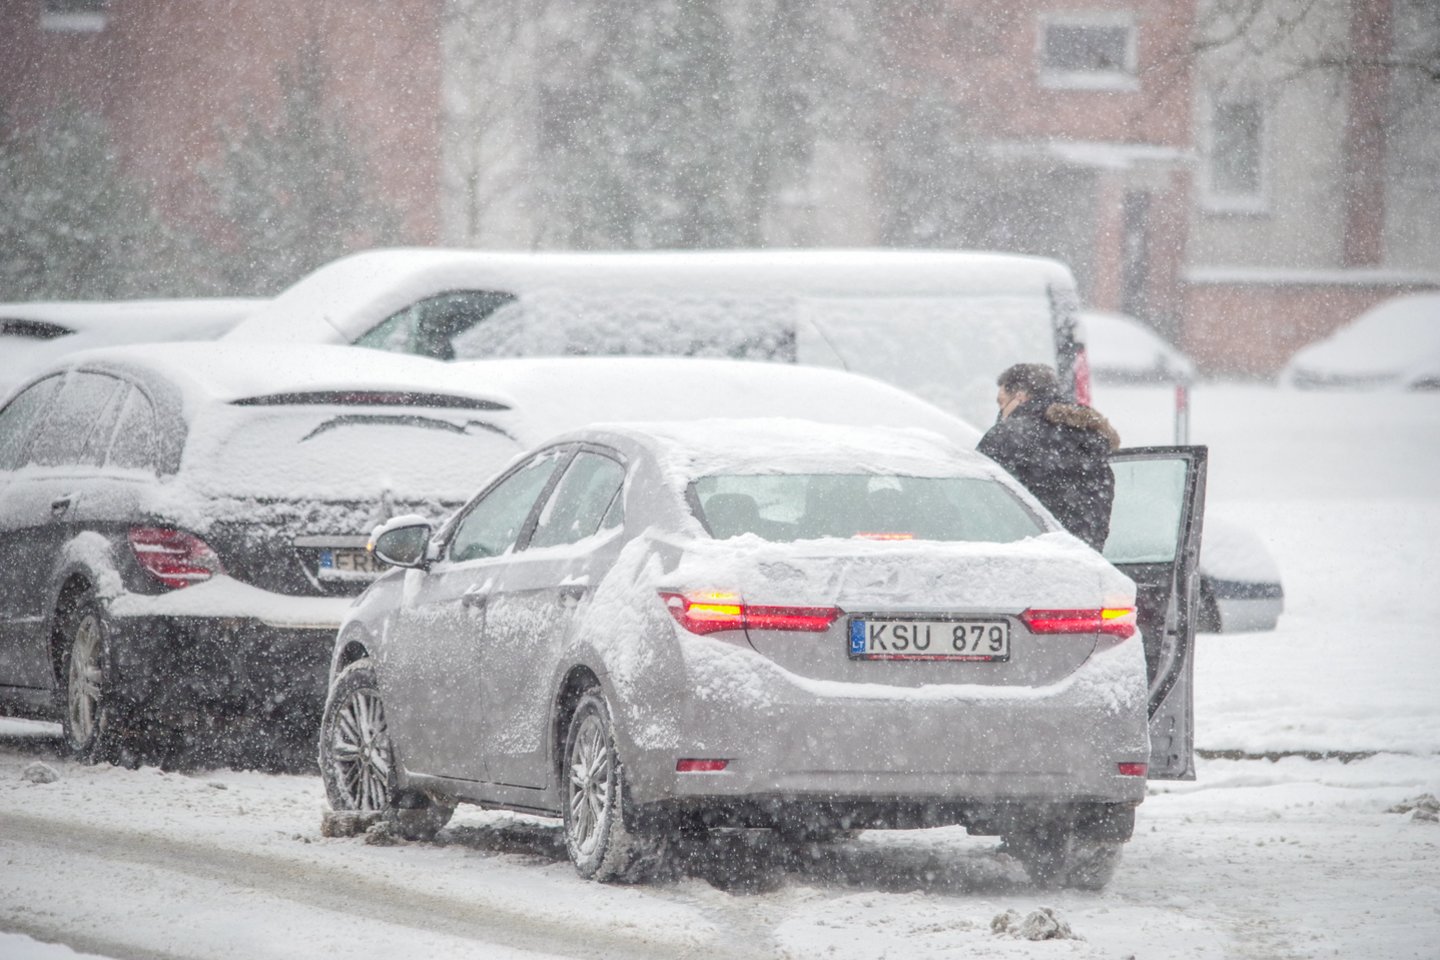 Gausiau iškrentantis sniegas ir žema temperatūra, vairuotojus ragina būti atsargesniais kelyje, rinktis saugų greitį bei laikytis didesnio nei įprasta saugaus atstumo.<br>V.Ščiavinsko nuotr.